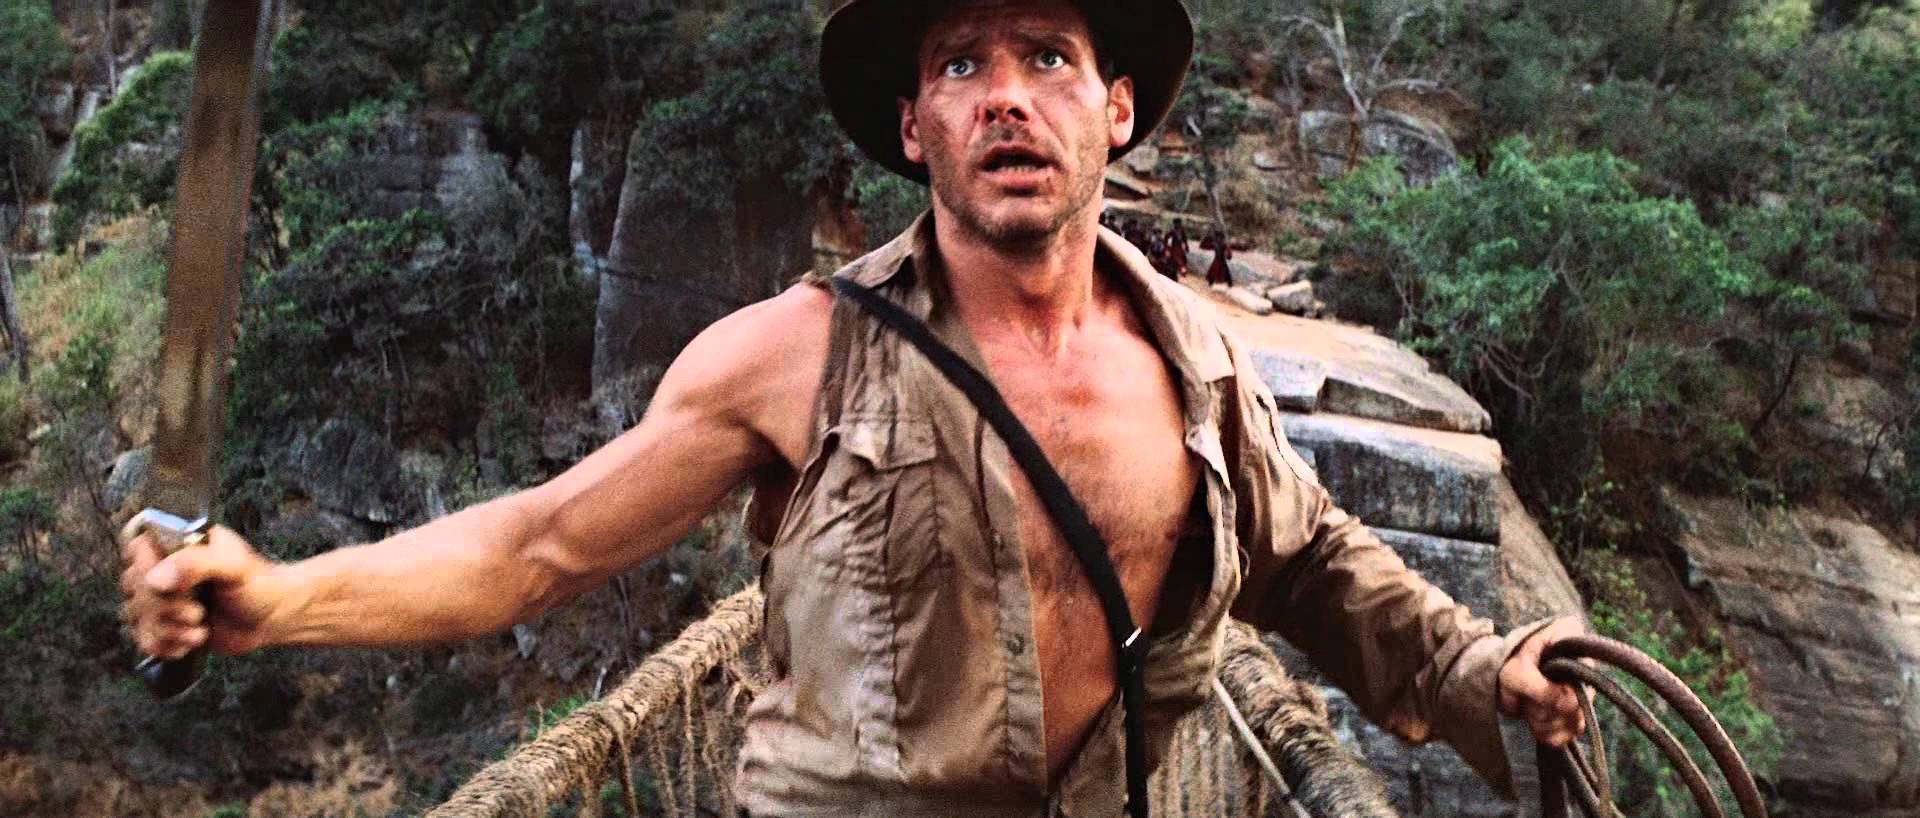 Indiana Jones And The Temple Of Doom HD wallpapers, Desktop wallpaper - most viewed